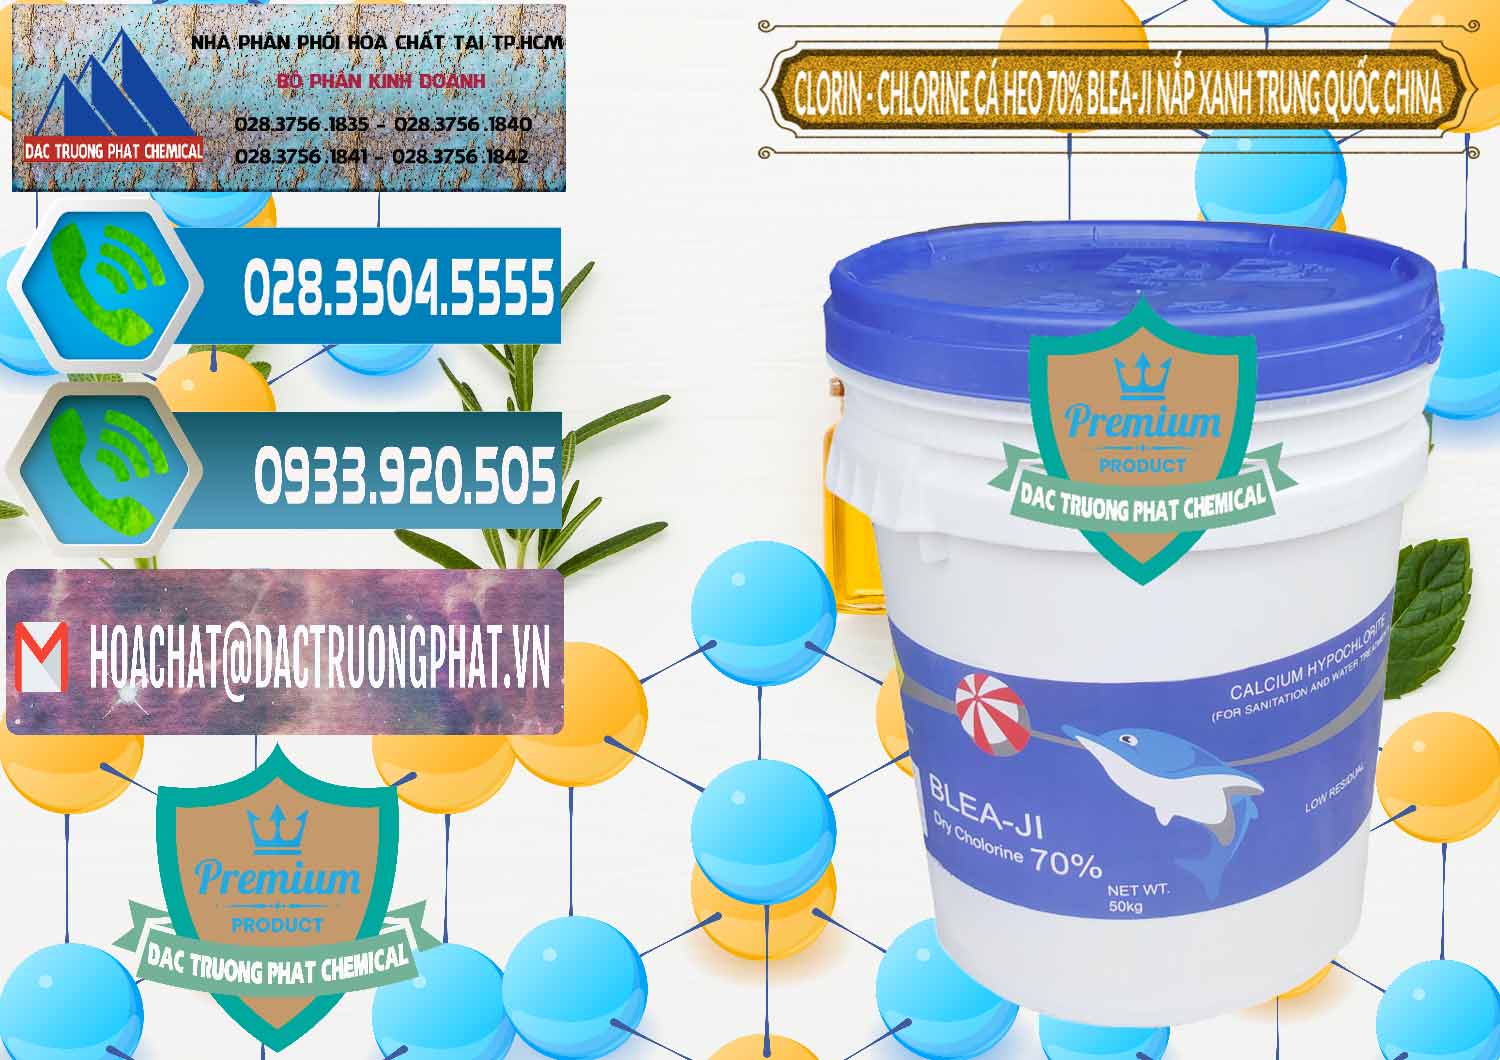 Đơn vị chuyên bán & phân phối Clorin - Chlorine Cá Heo 70% Cá Heo Blea-Ji Thùng Tròn Nắp Xanh Trung Quốc China - 0208 - Cty phân phối ( cung cấp ) hóa chất tại TP.HCM - congtyhoachat.net